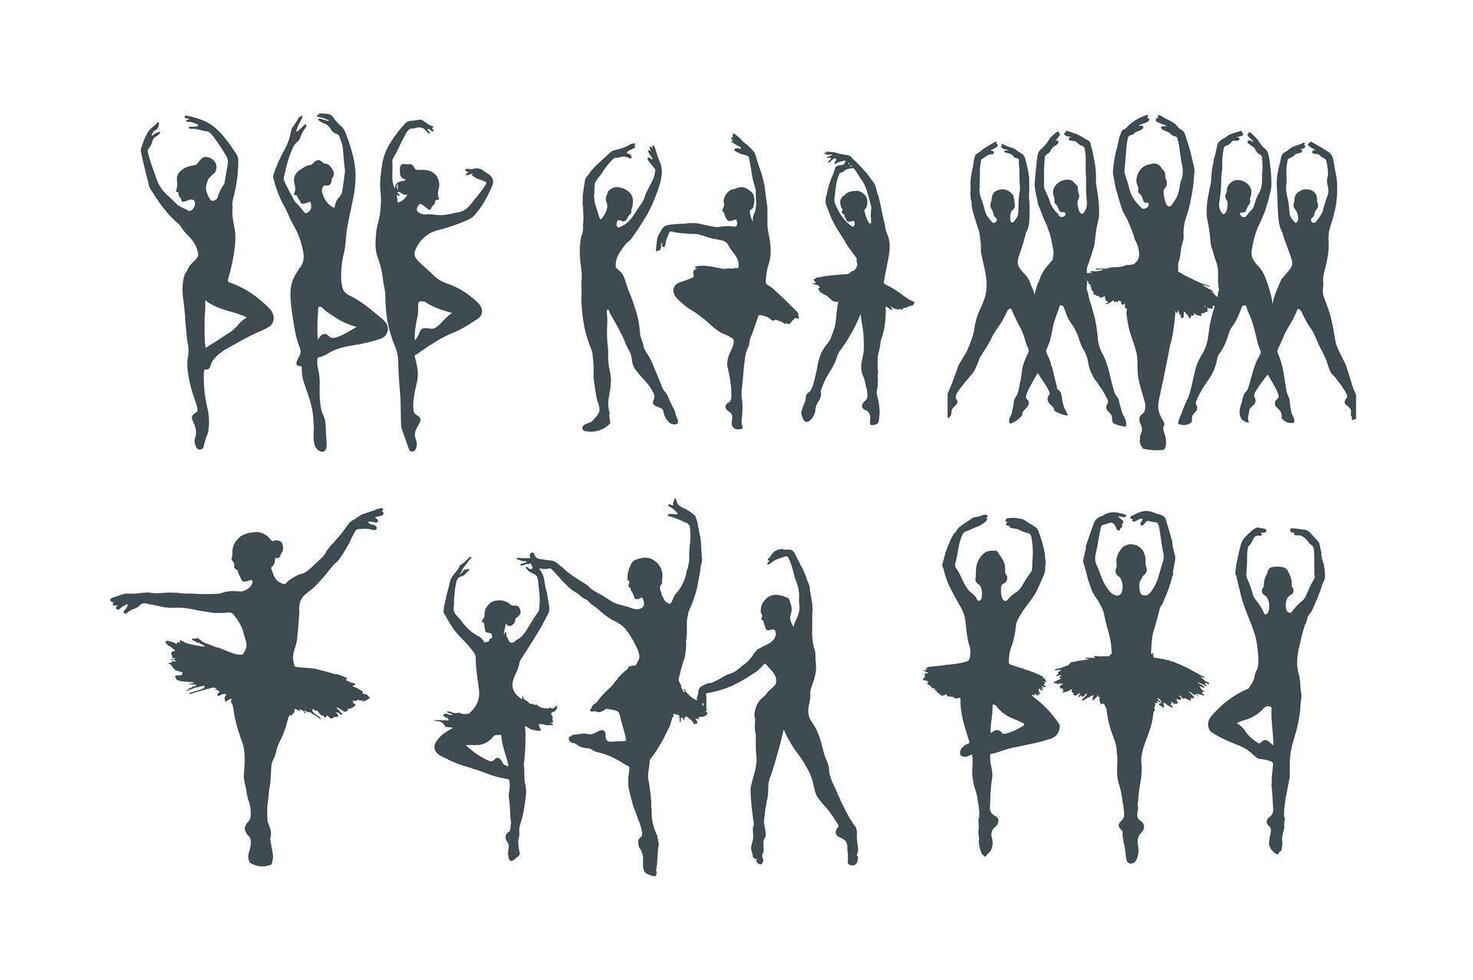 moderno Pro Moda danza silueta paquete de bailarín siluetas en blanco fondo, vector